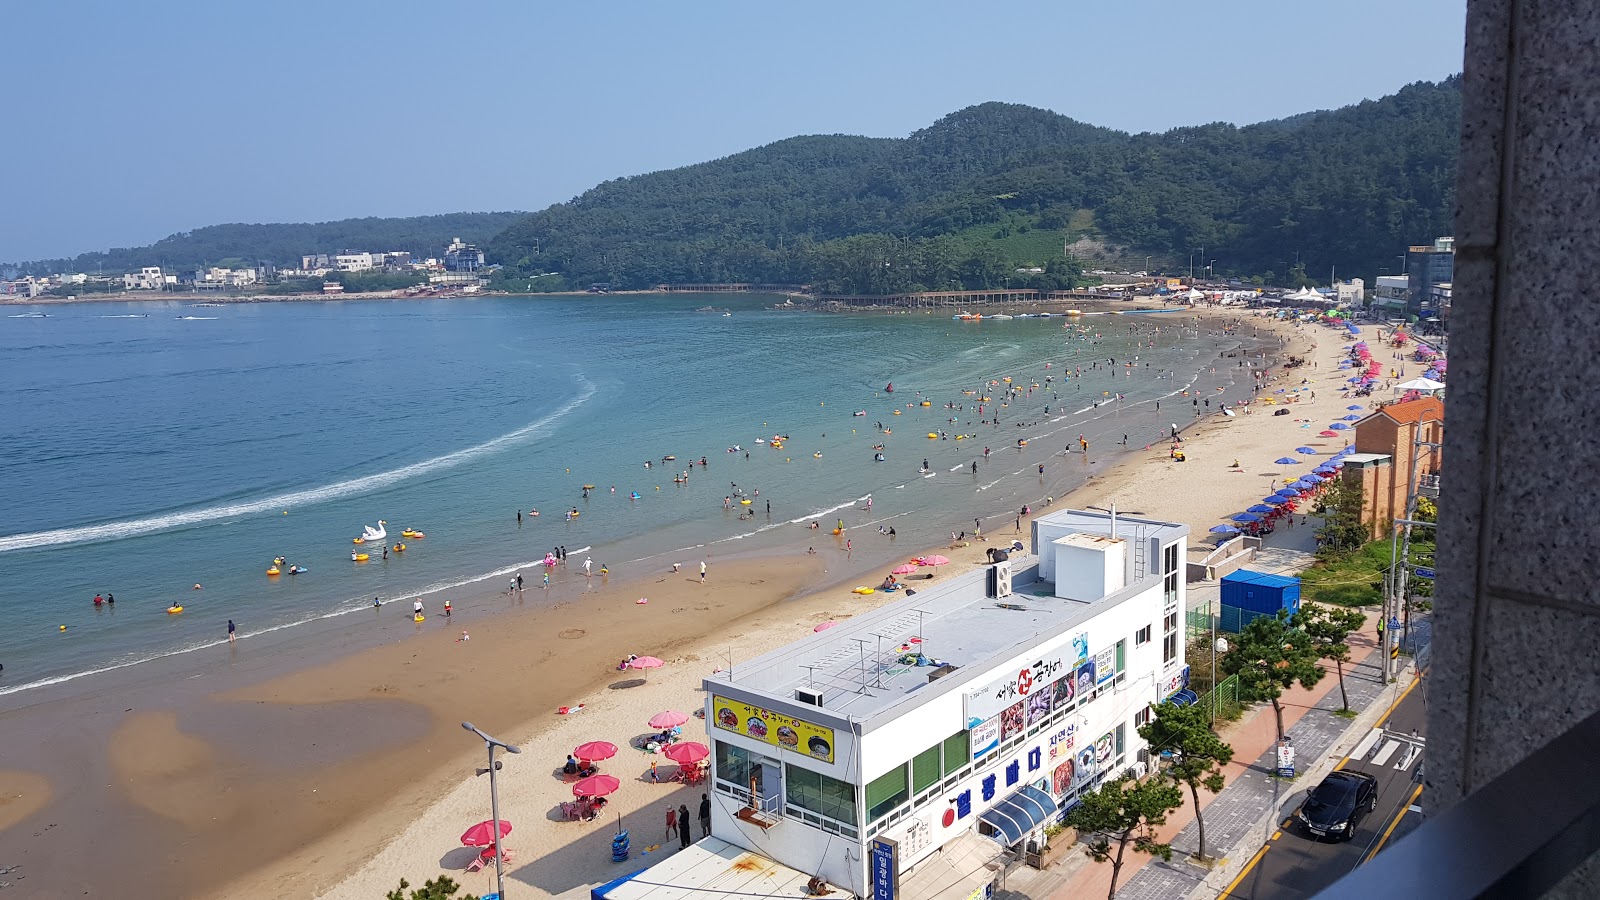 Ilgwang海滩的照片 便利设施区域